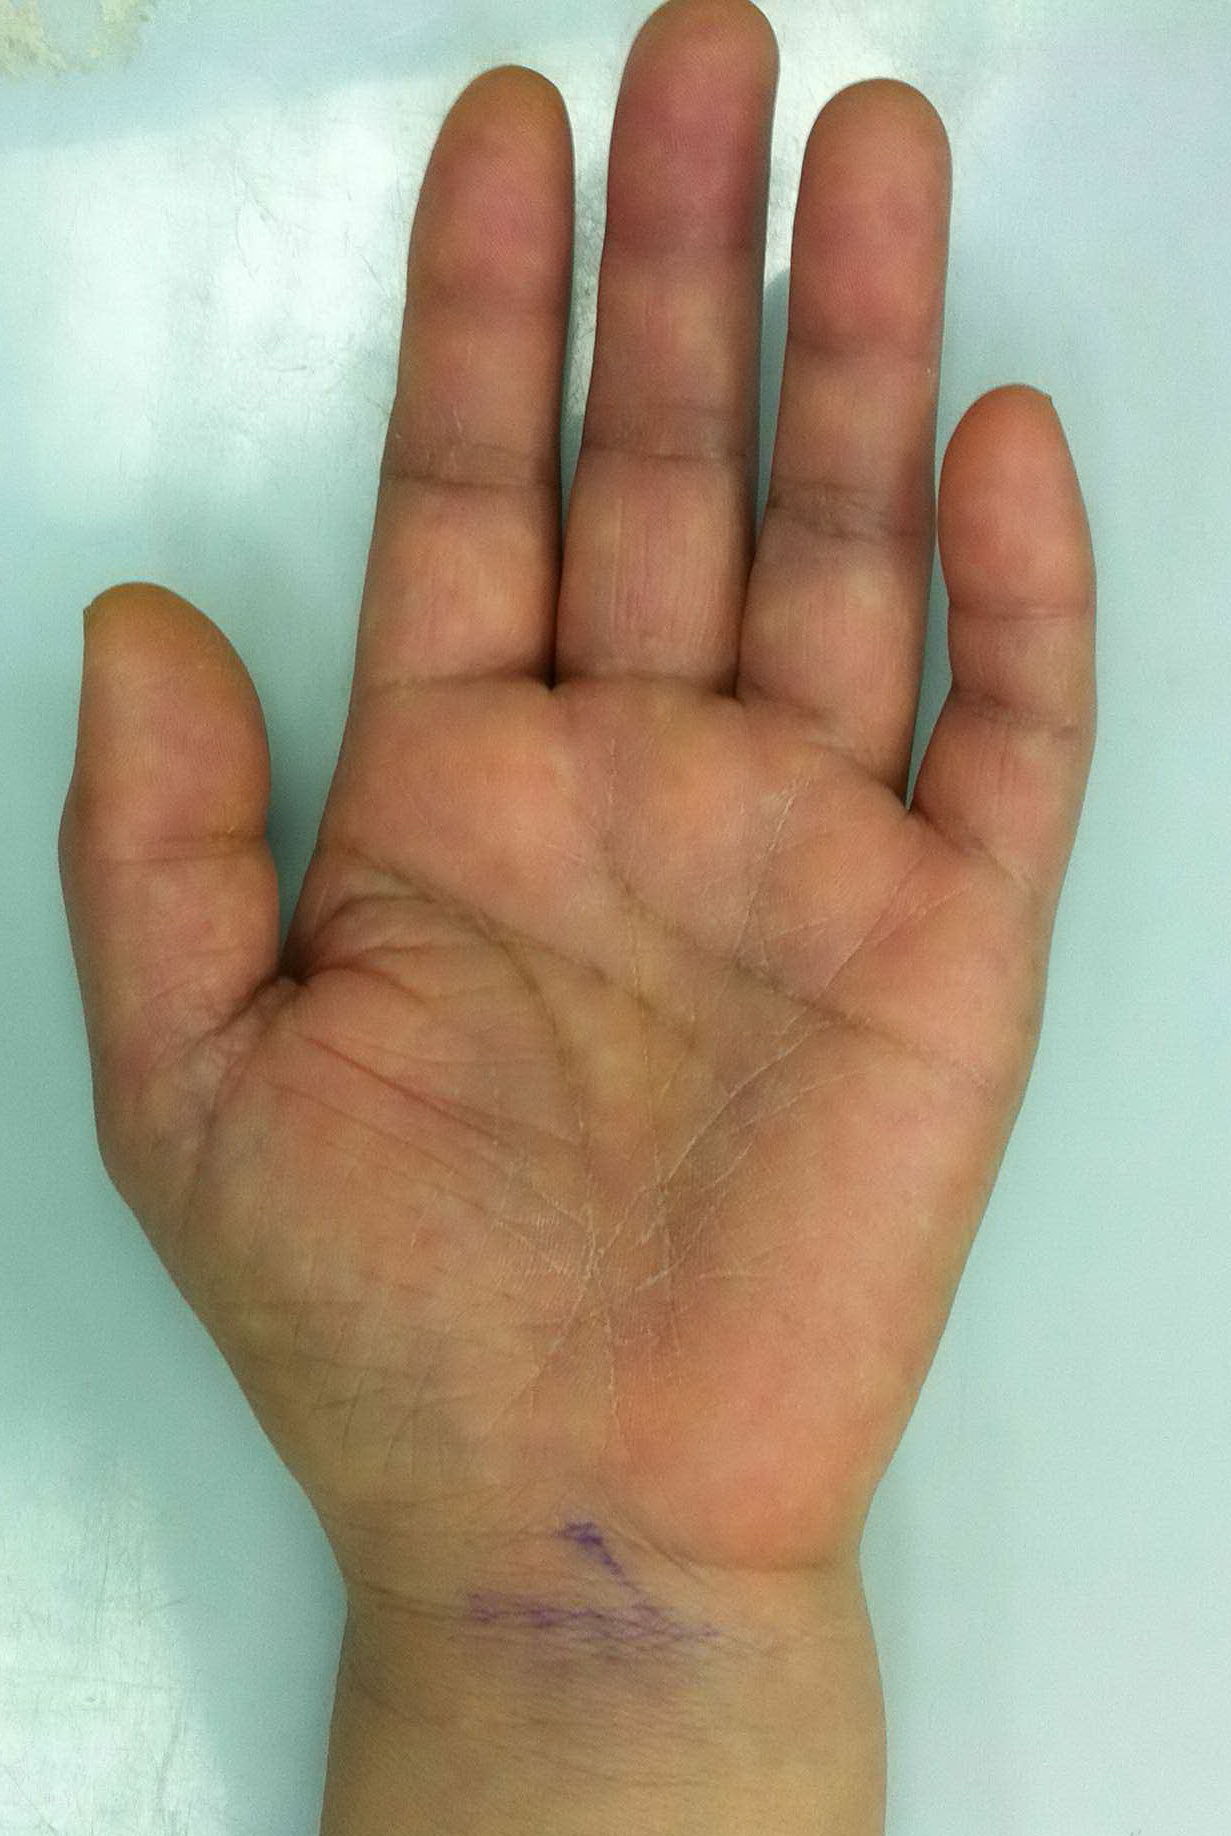 患者女性,左手大鱼际肌肉萎缩三个月,左手前三个半手指麻木,疼痛,手指